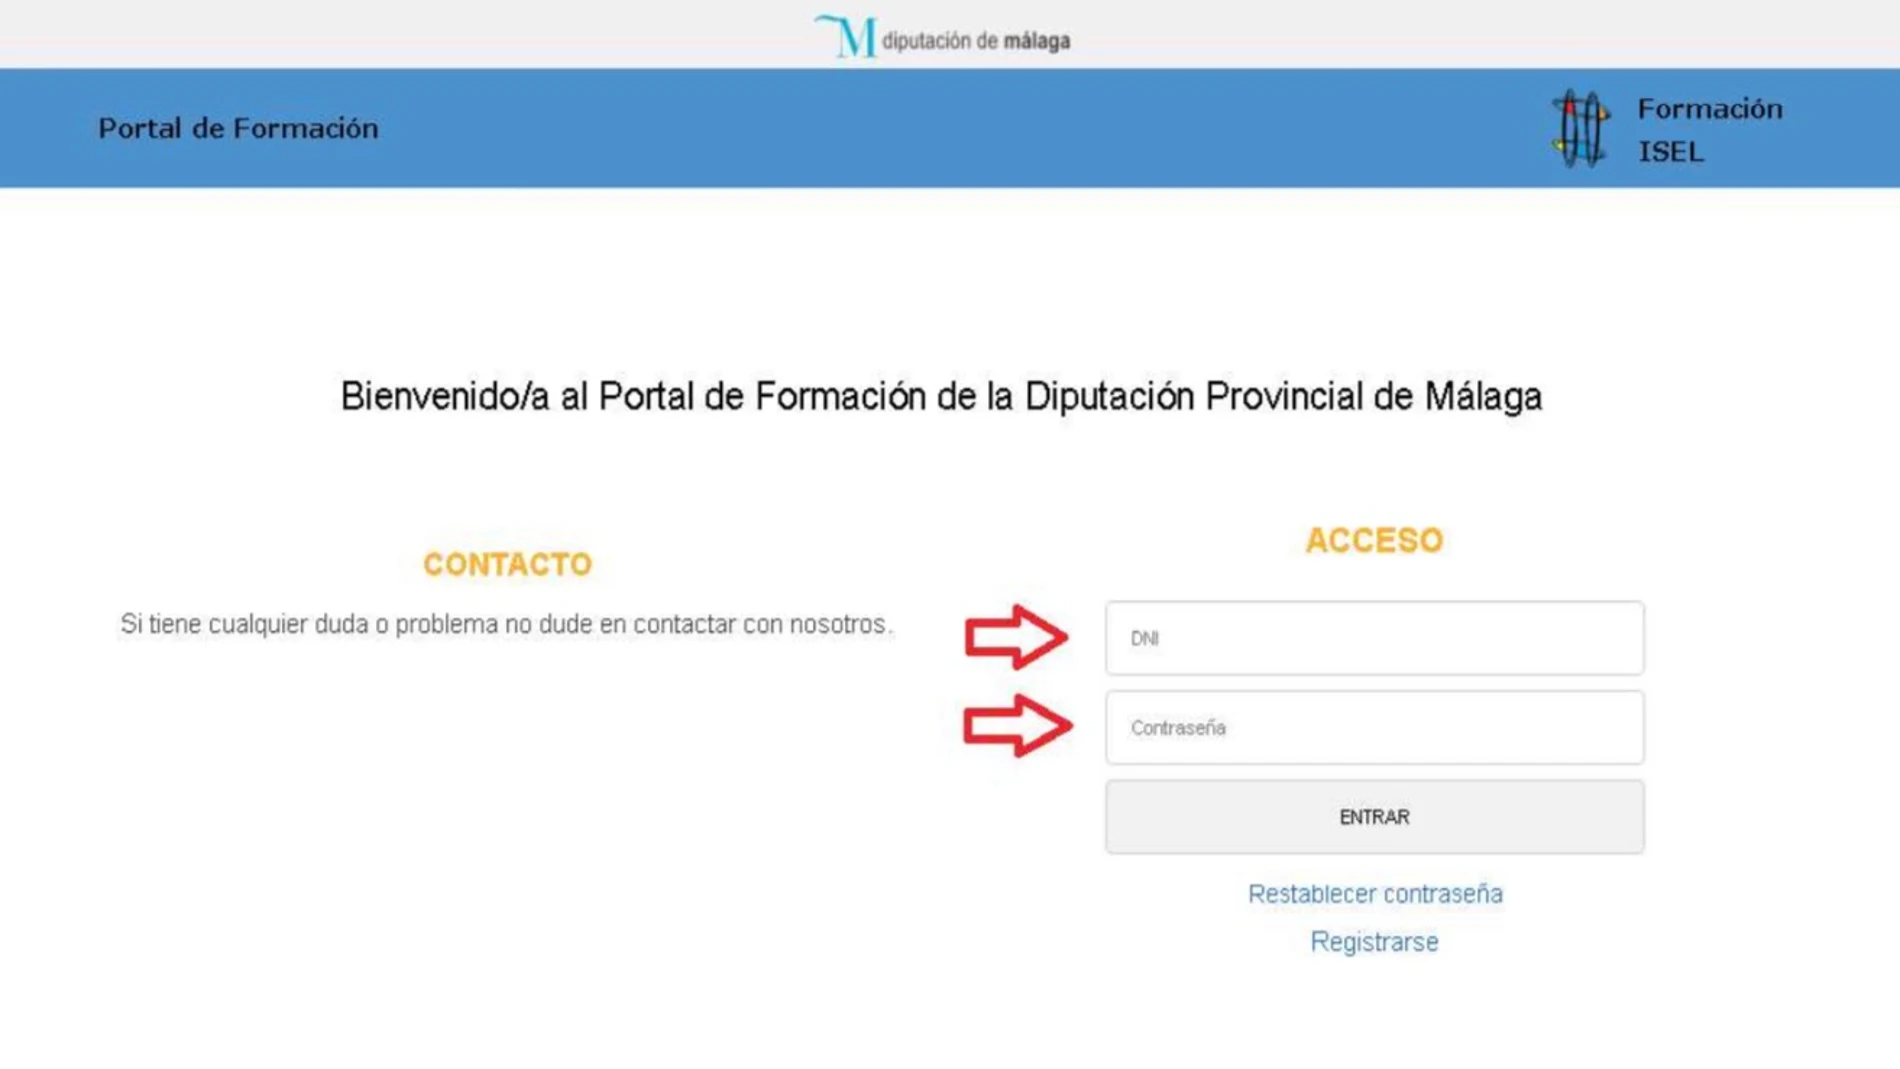 Málaga.- Coronavirus.- La Diputación de Málaga lanza un nuevo portal de formación online dirigido a sus empleados